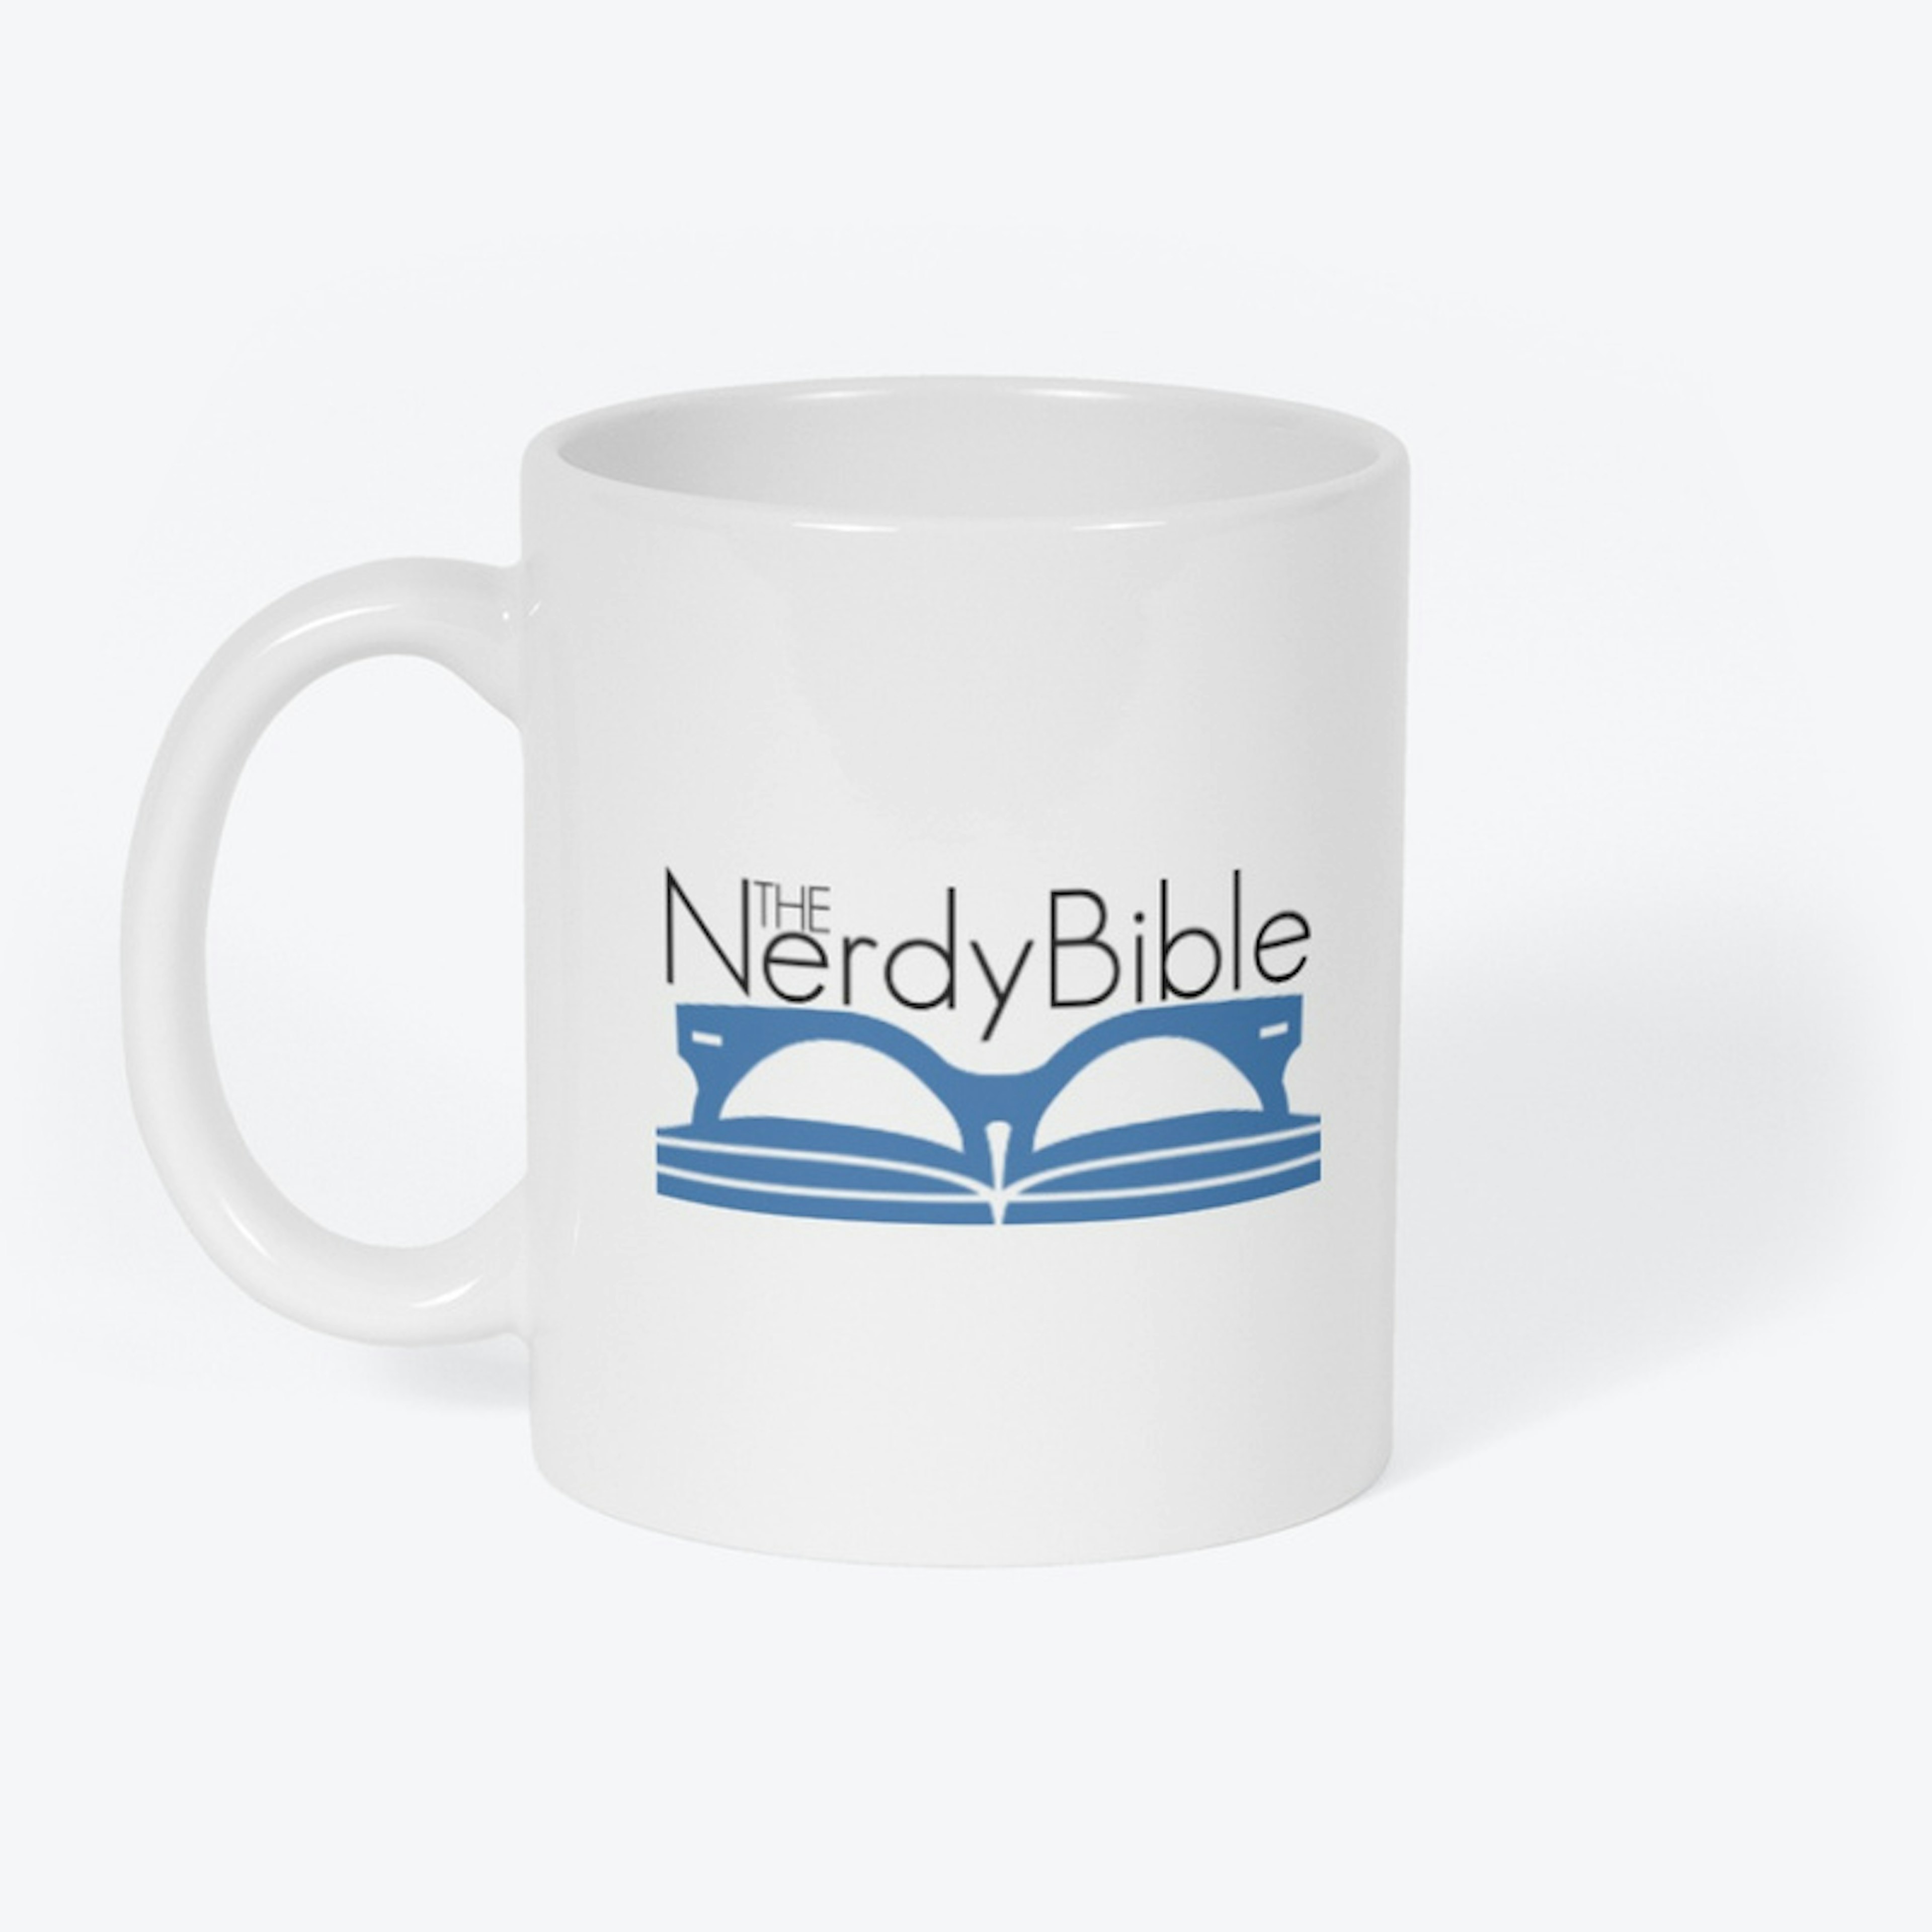 The Nerdy Bible - White Mug